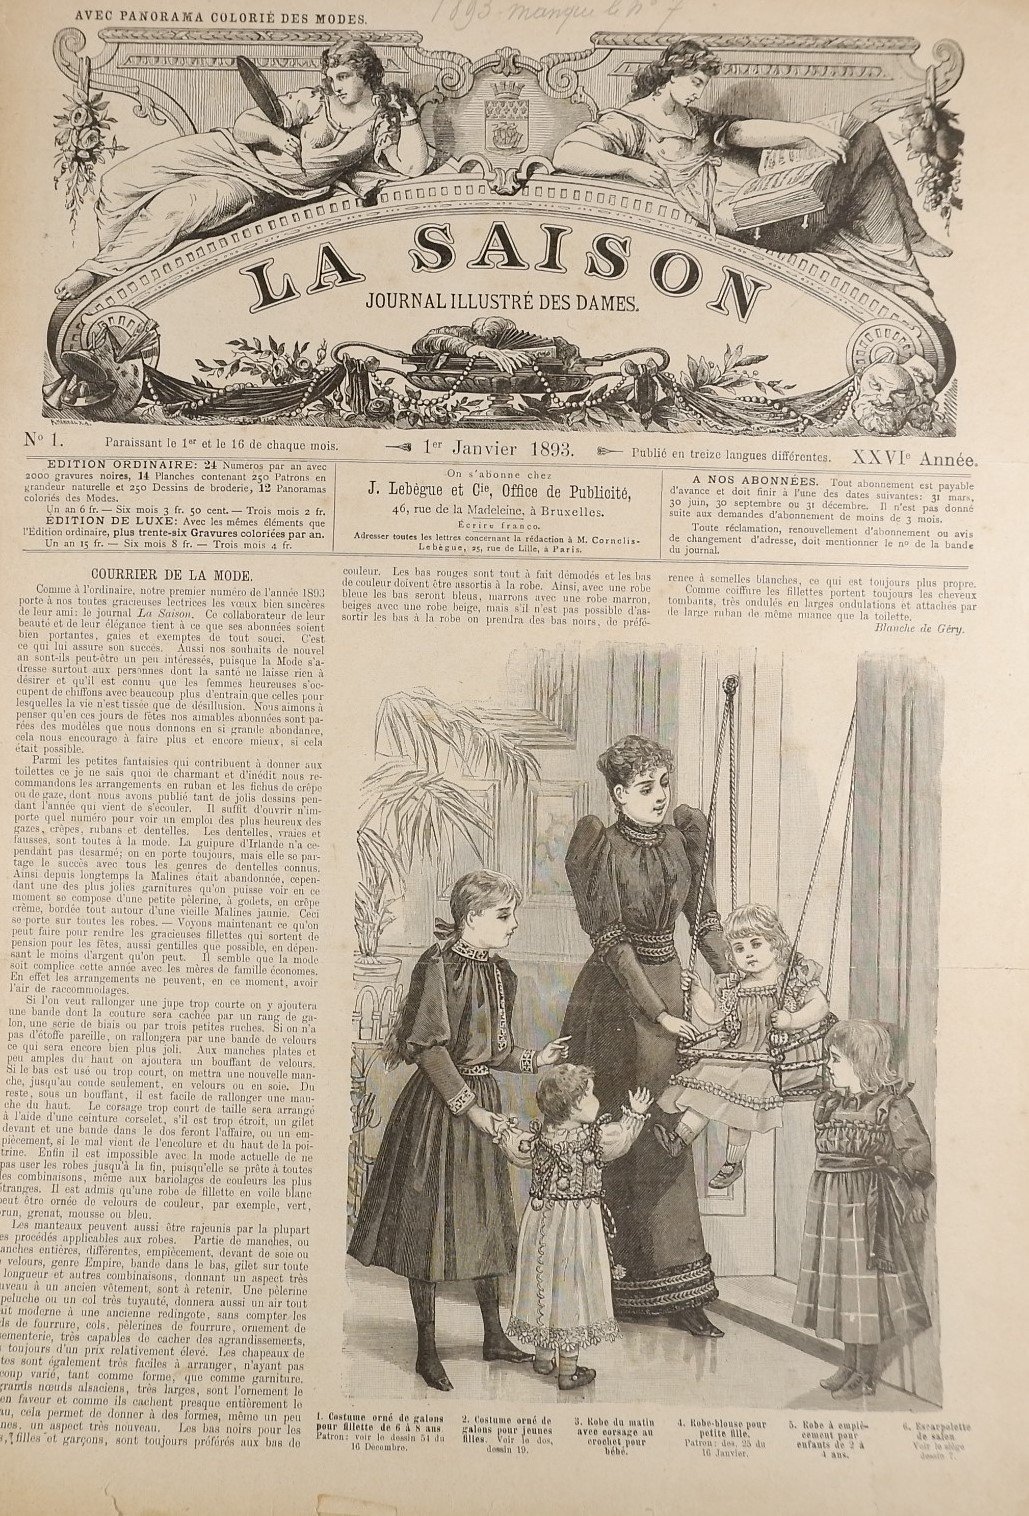 Sammlung: La Saison, Journal illustre`des dames (1893) (Volkskunde- und Freilichtmuseum Roscheider Hof RR-F)